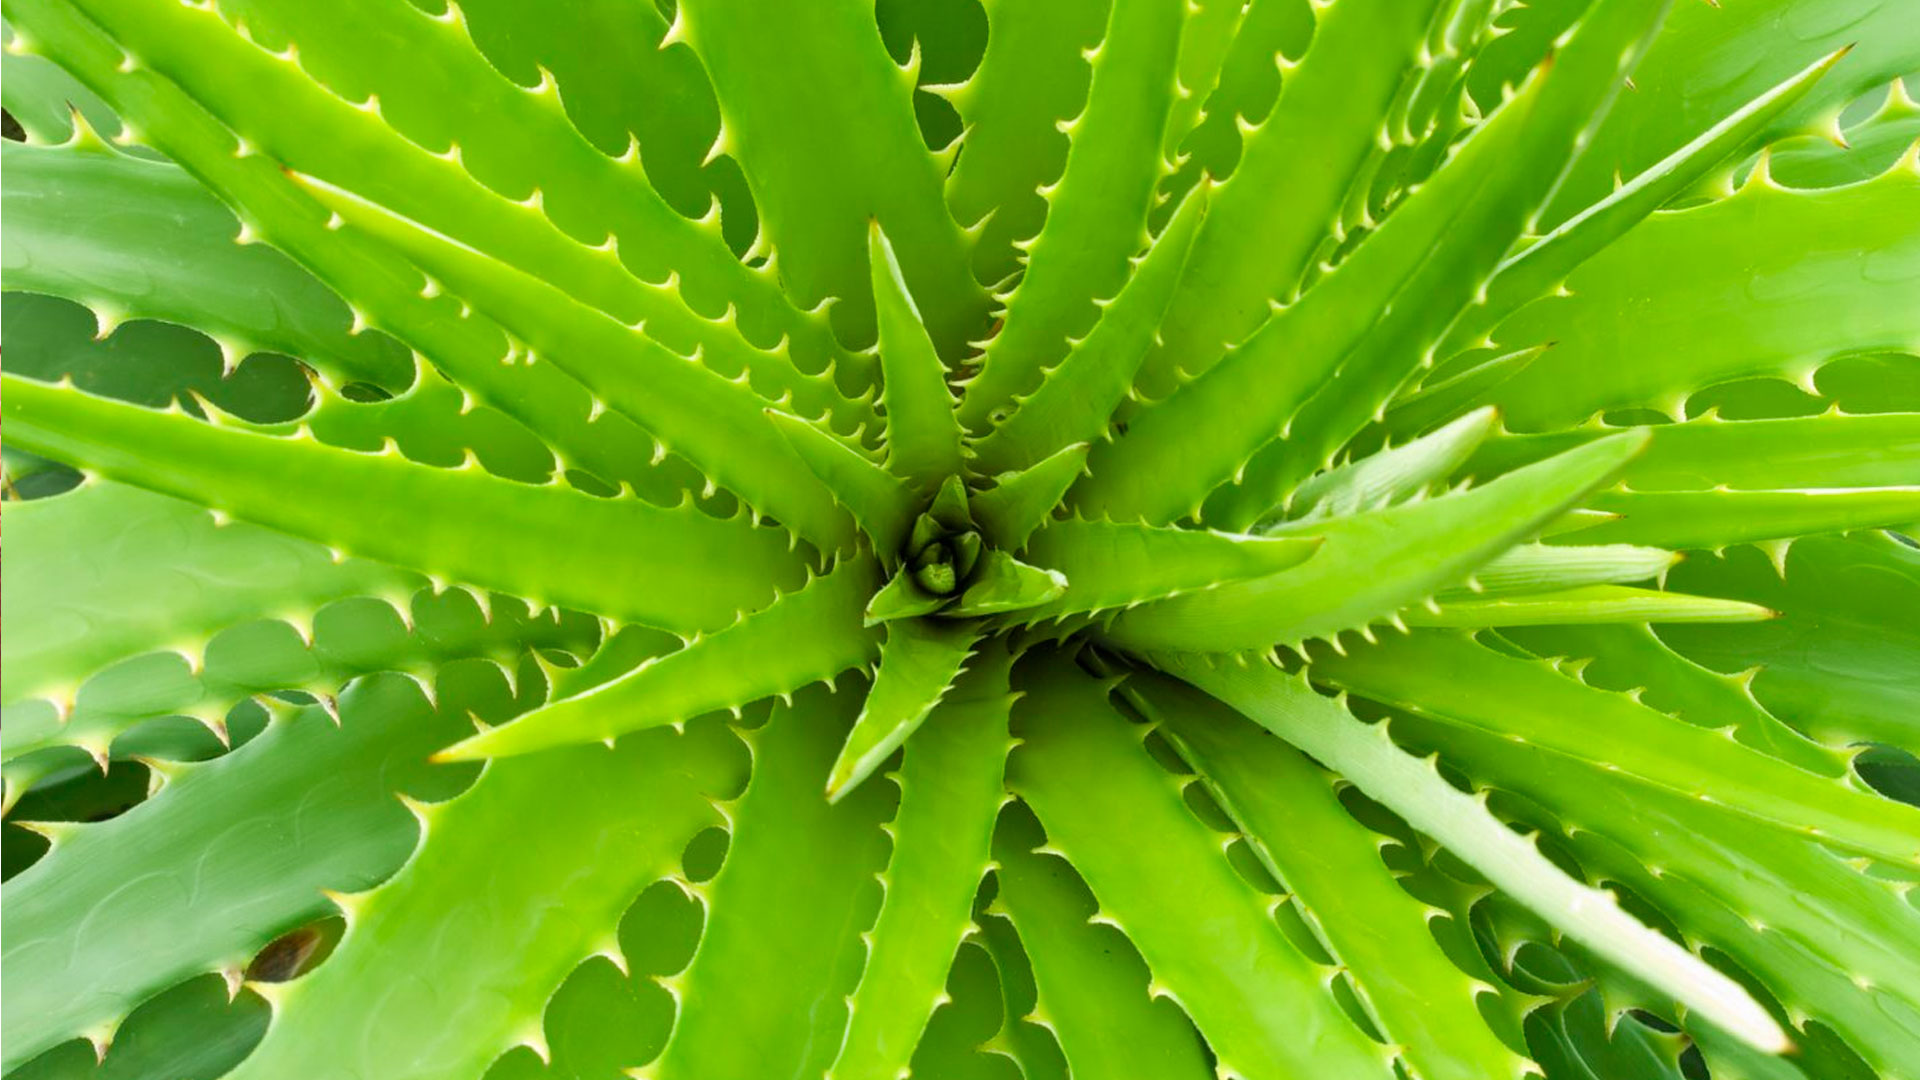 Aloe vera and cactus plants benefits